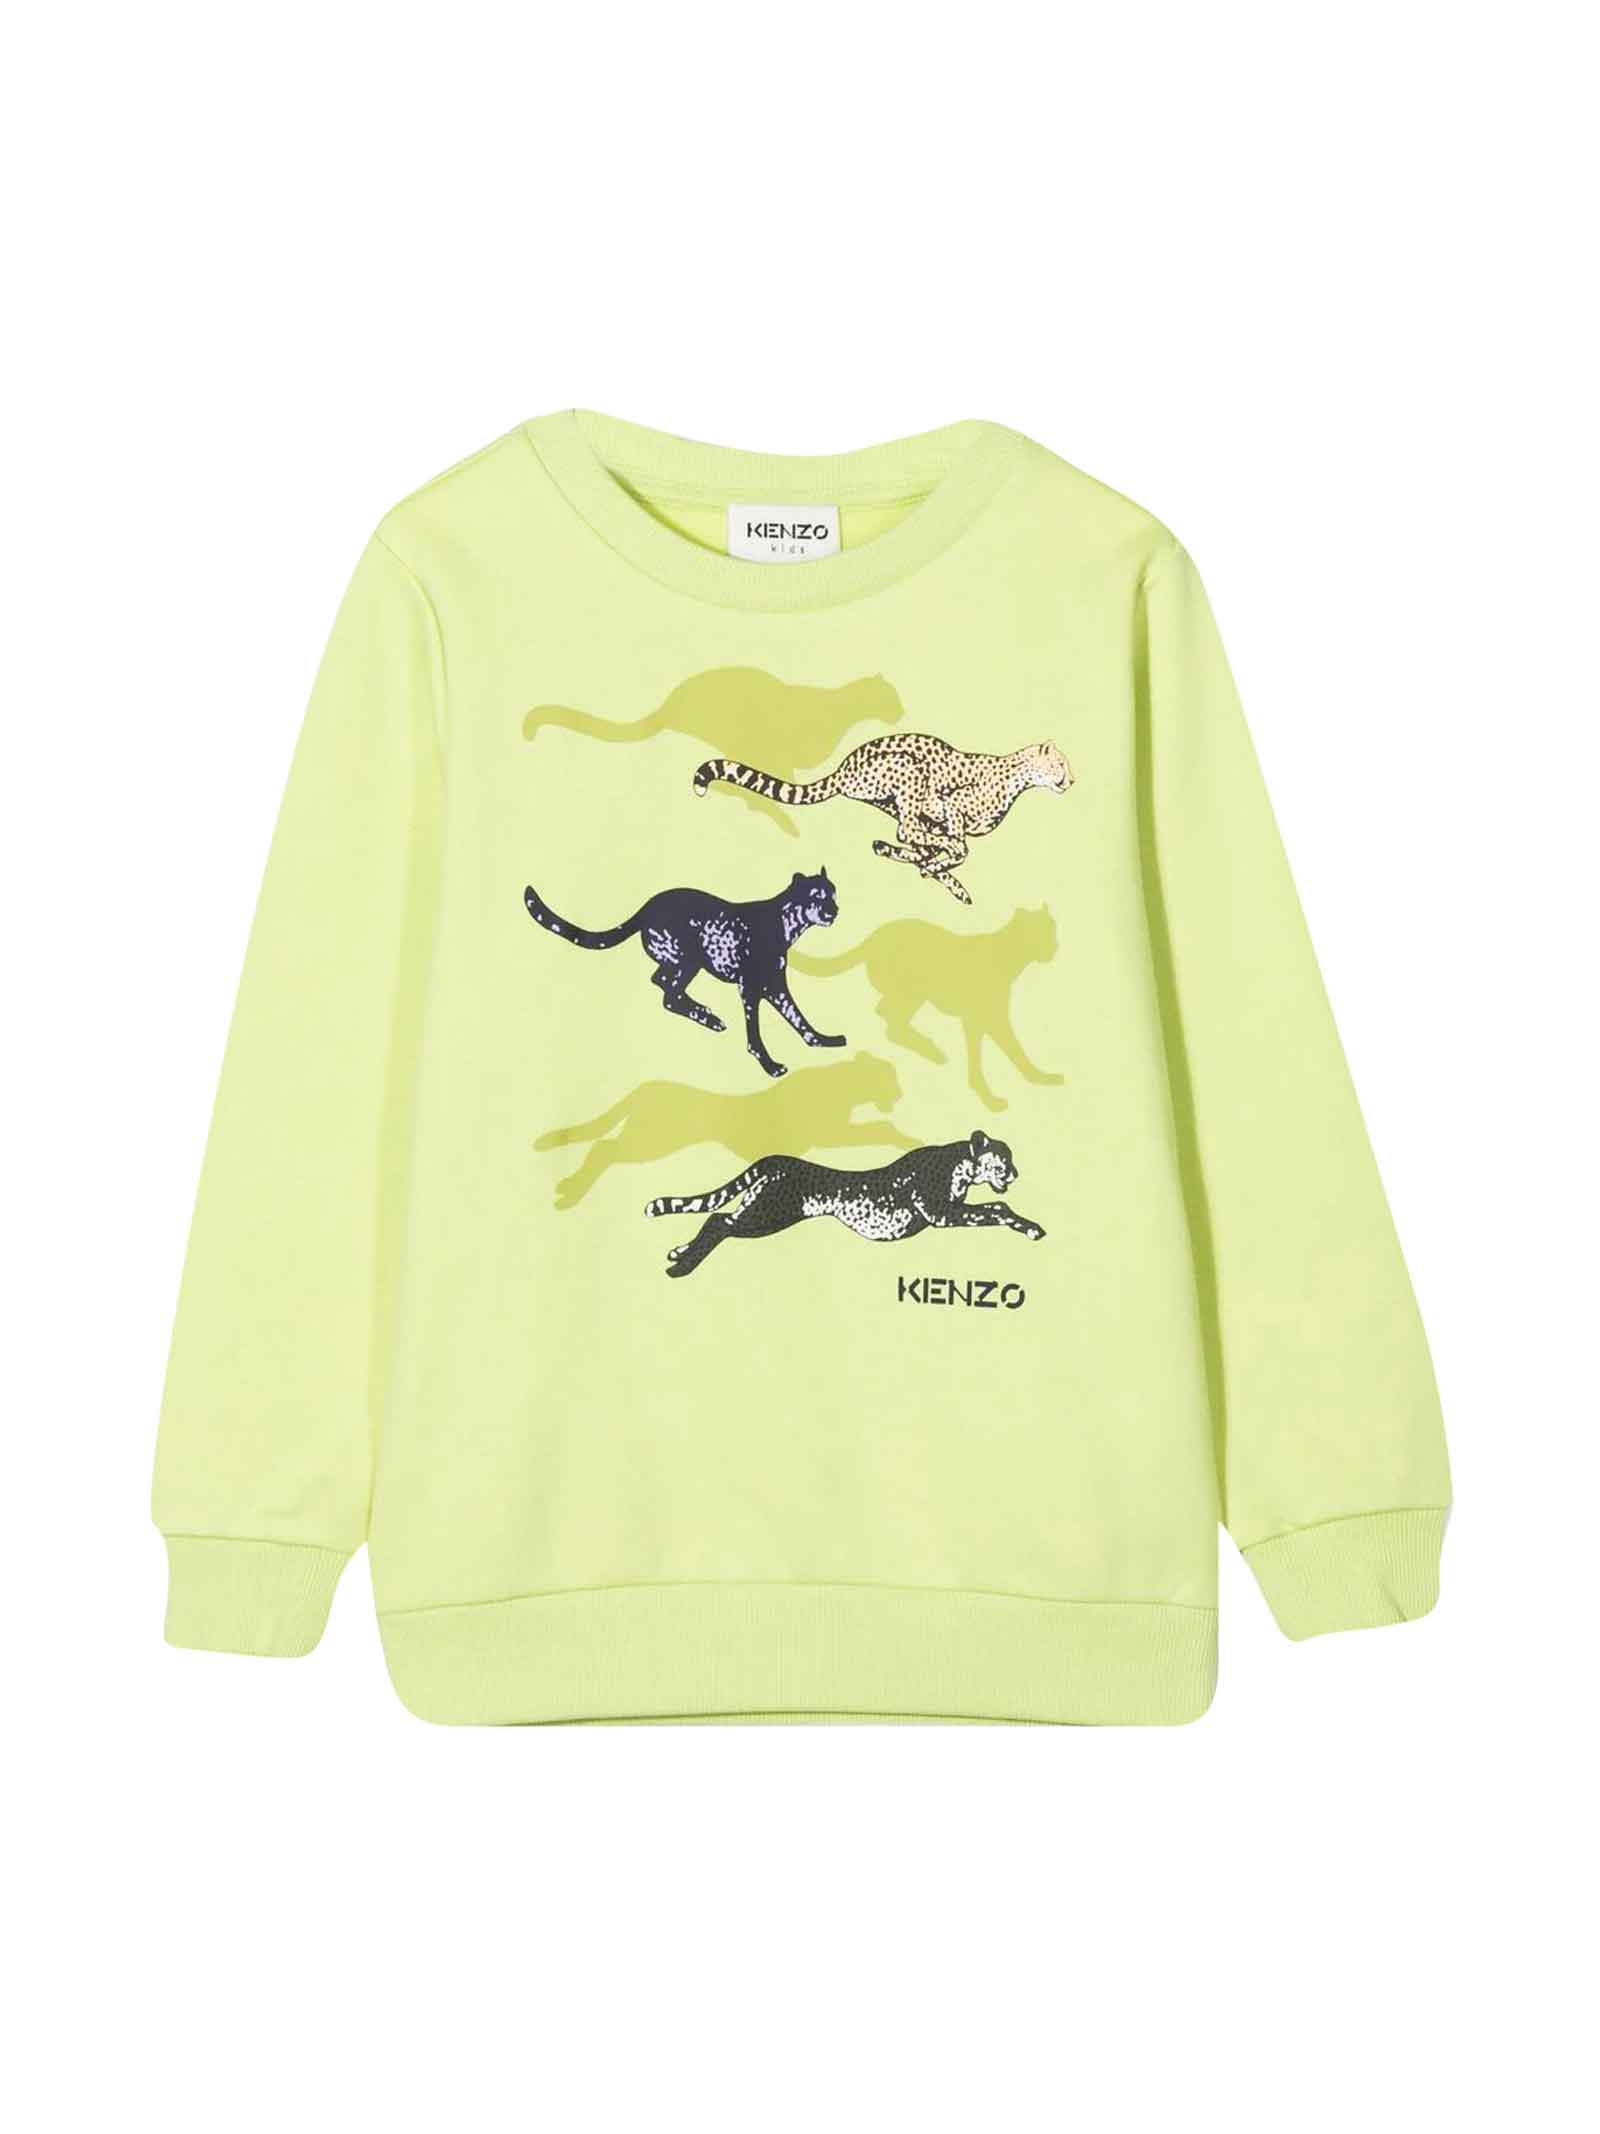 Kenzo Kids Yellow Sweatshirt Unisex